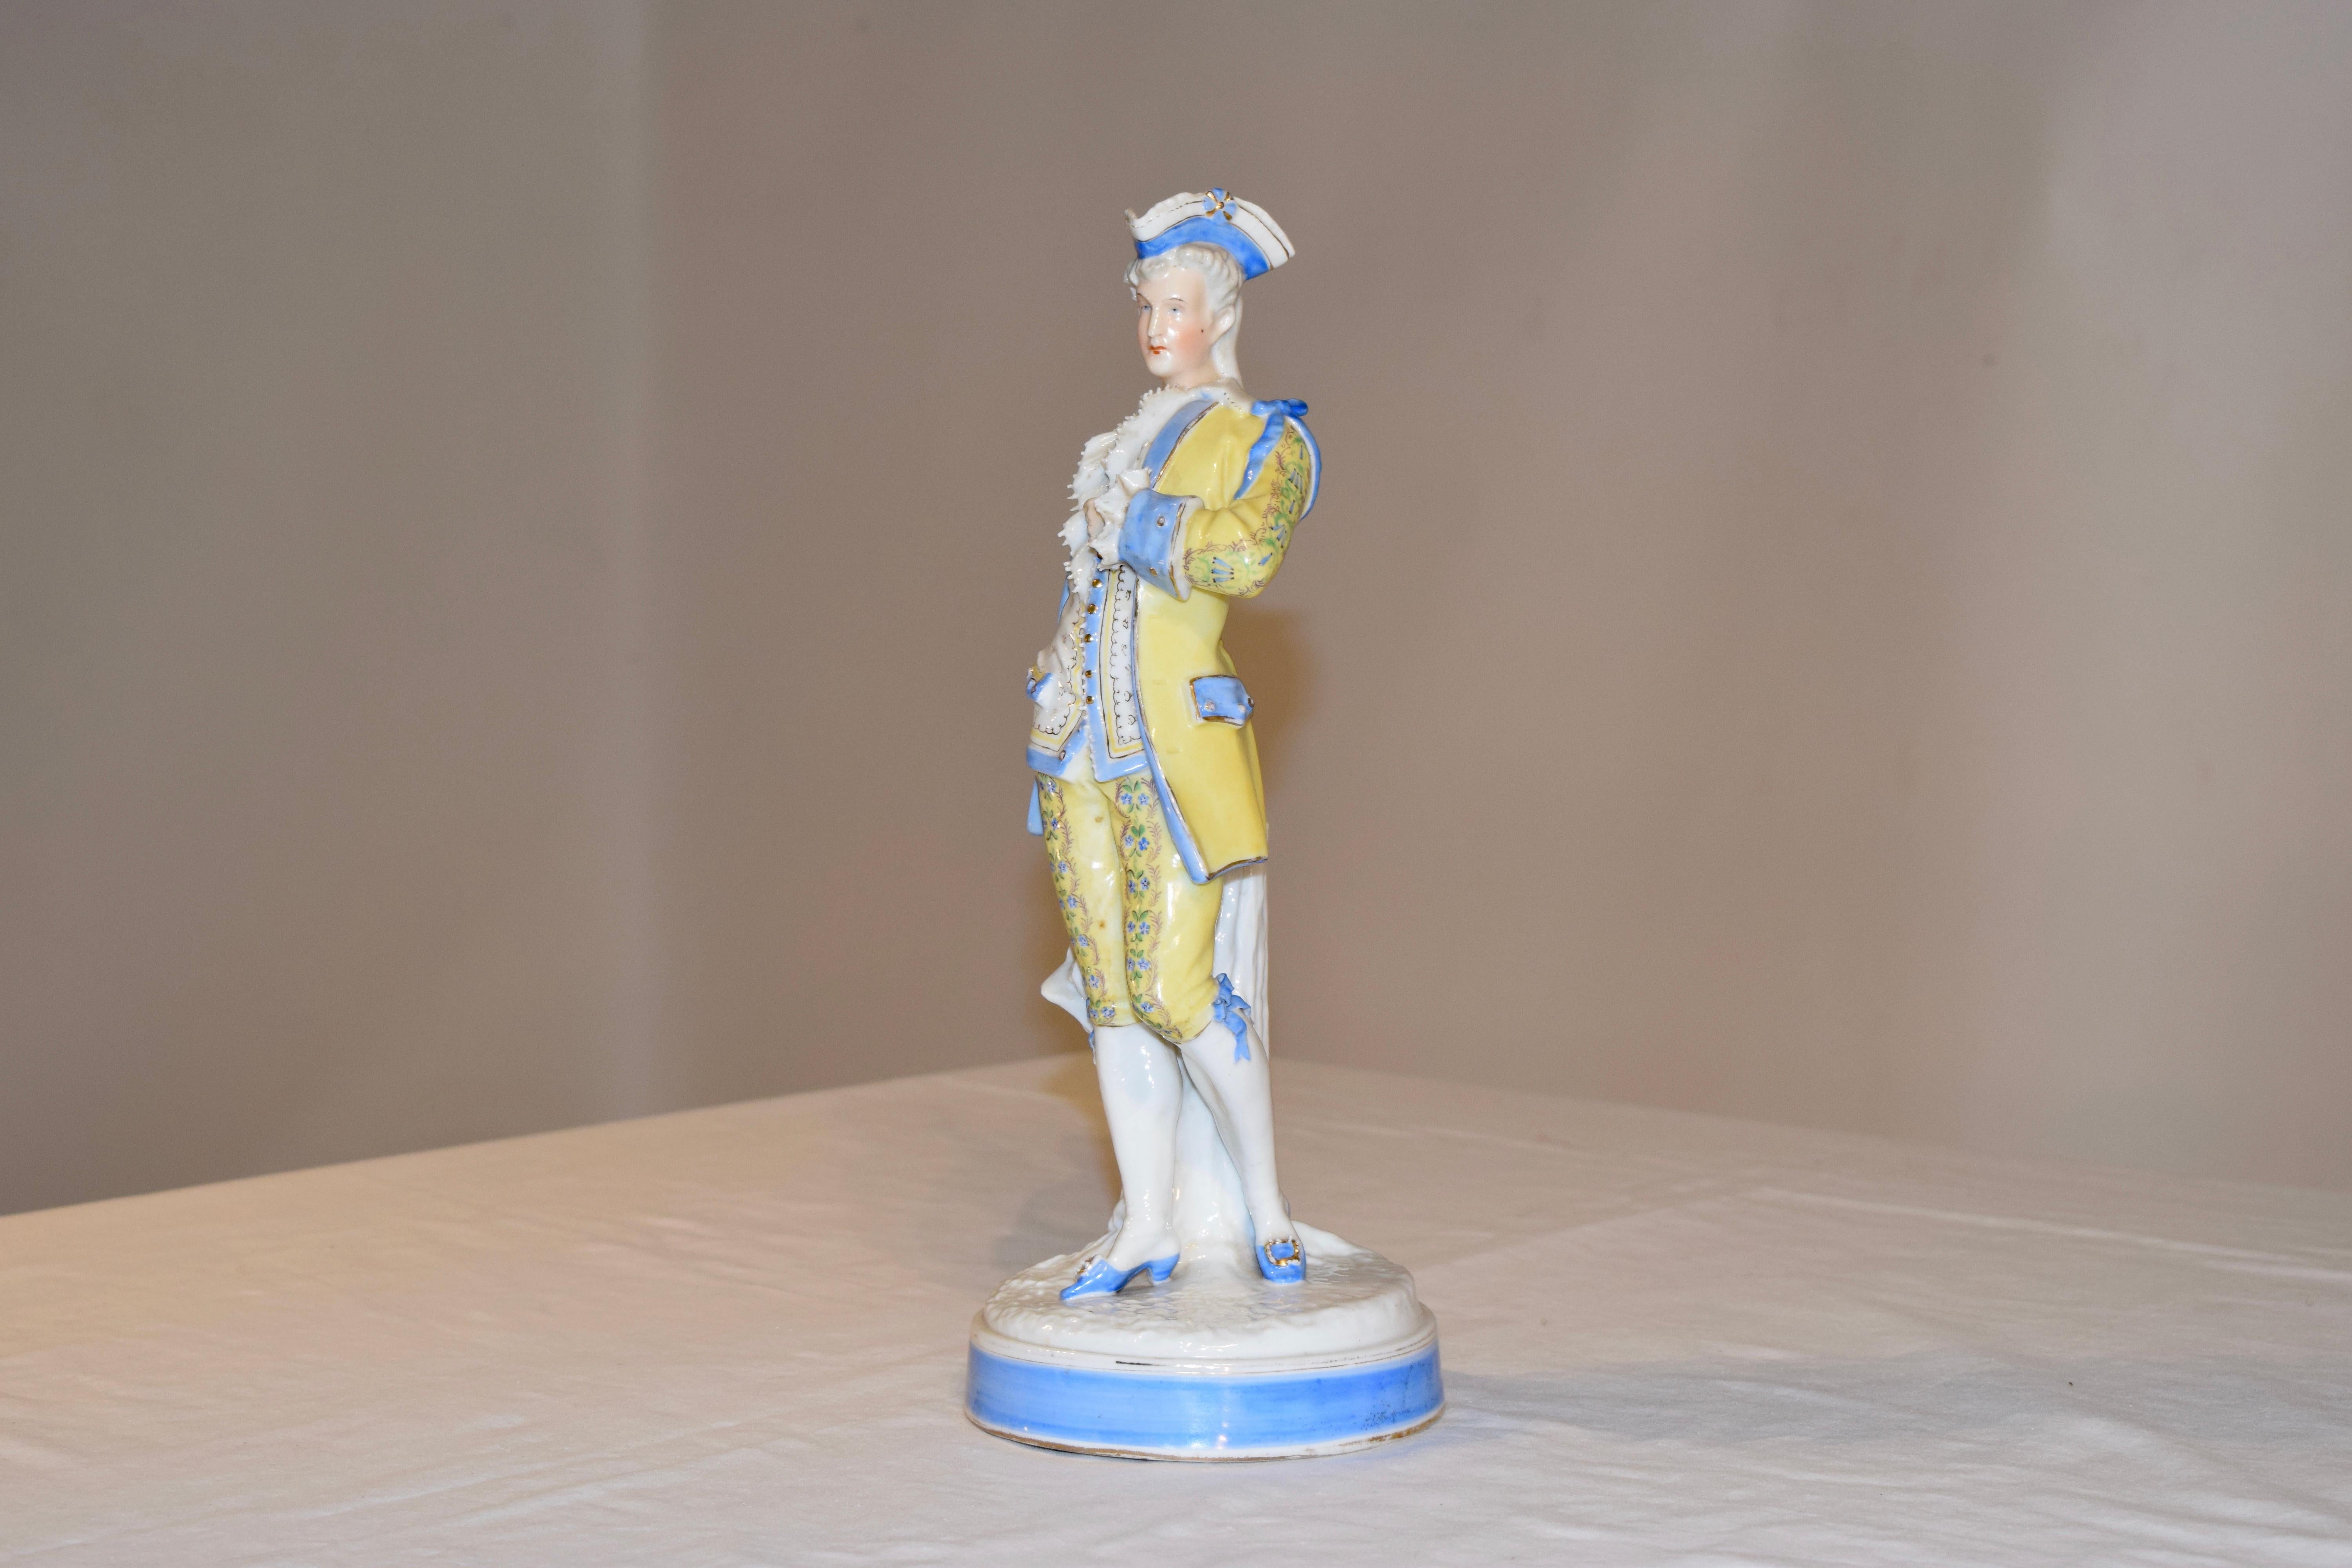 Sitzendorf-Figur eines Herrn aus dem 19. Jahrhundert in handgemalter Kleidung. Er trägt einen blauen Dreispitz und einen gelben Anzug, der mit einem schönen blauen Band versehen und von Hand mit Blumen und goldenen Knöpfen verziert ist. Seine Schuhe